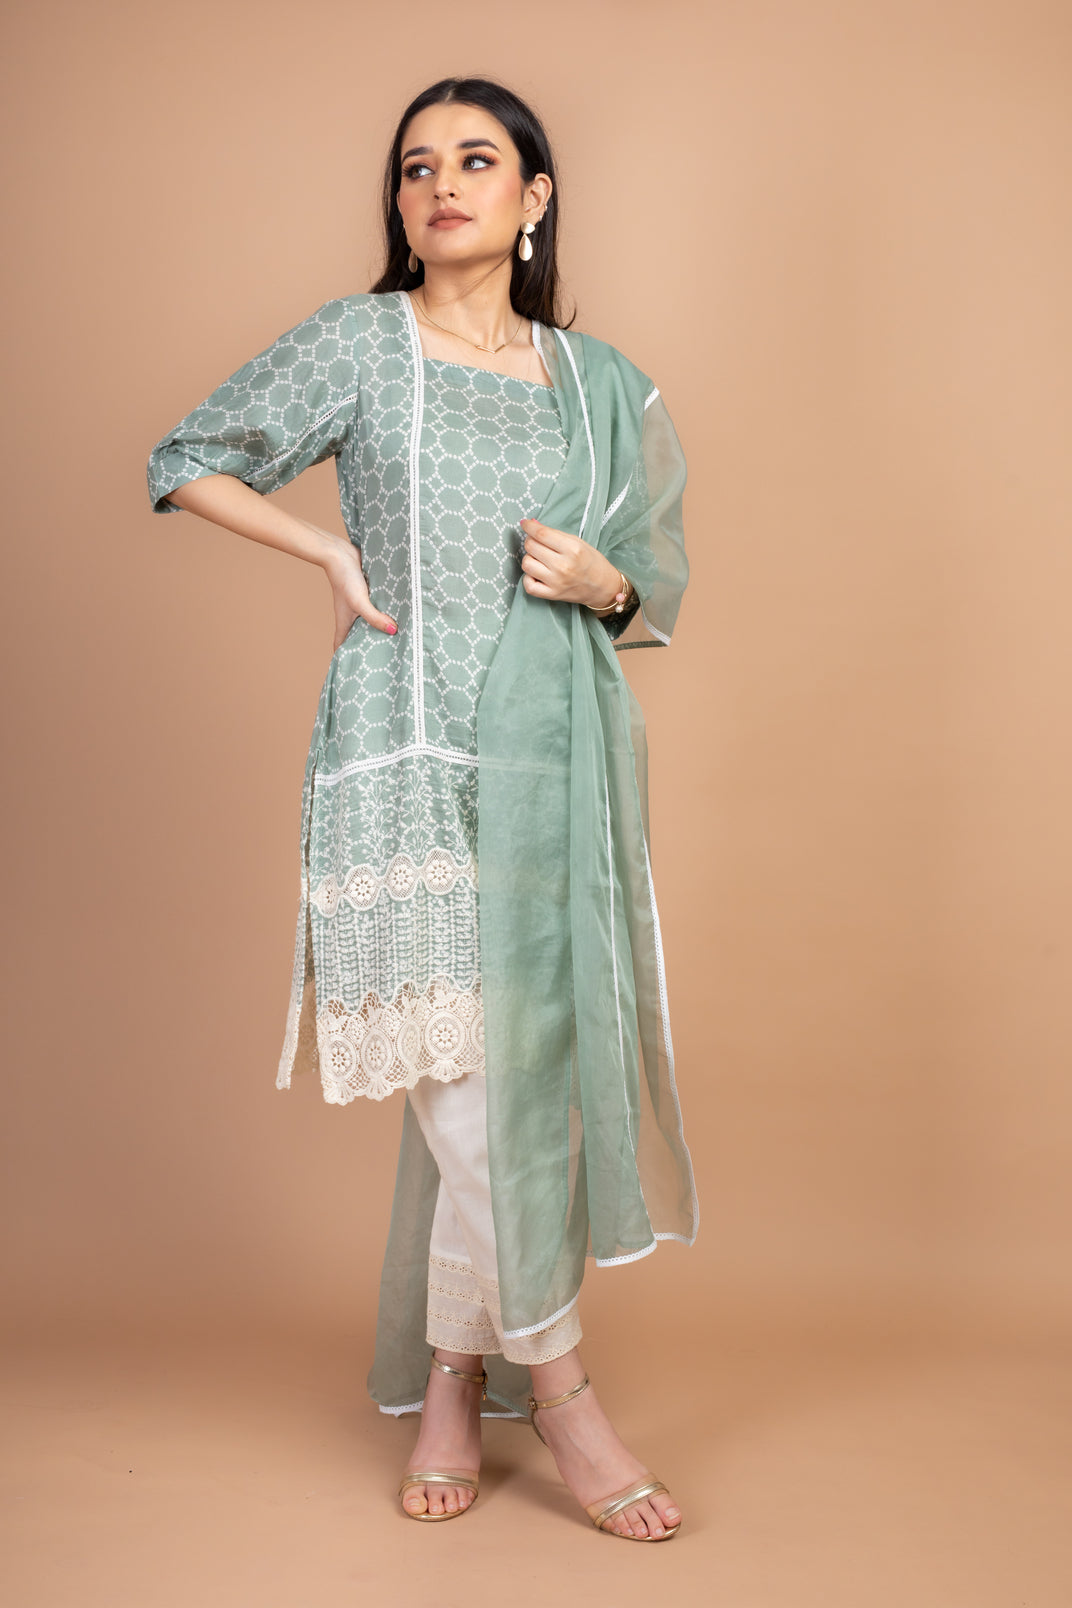 Jividha - Adaara Pastel greeen Suit Set with crochet detailing - Adaara